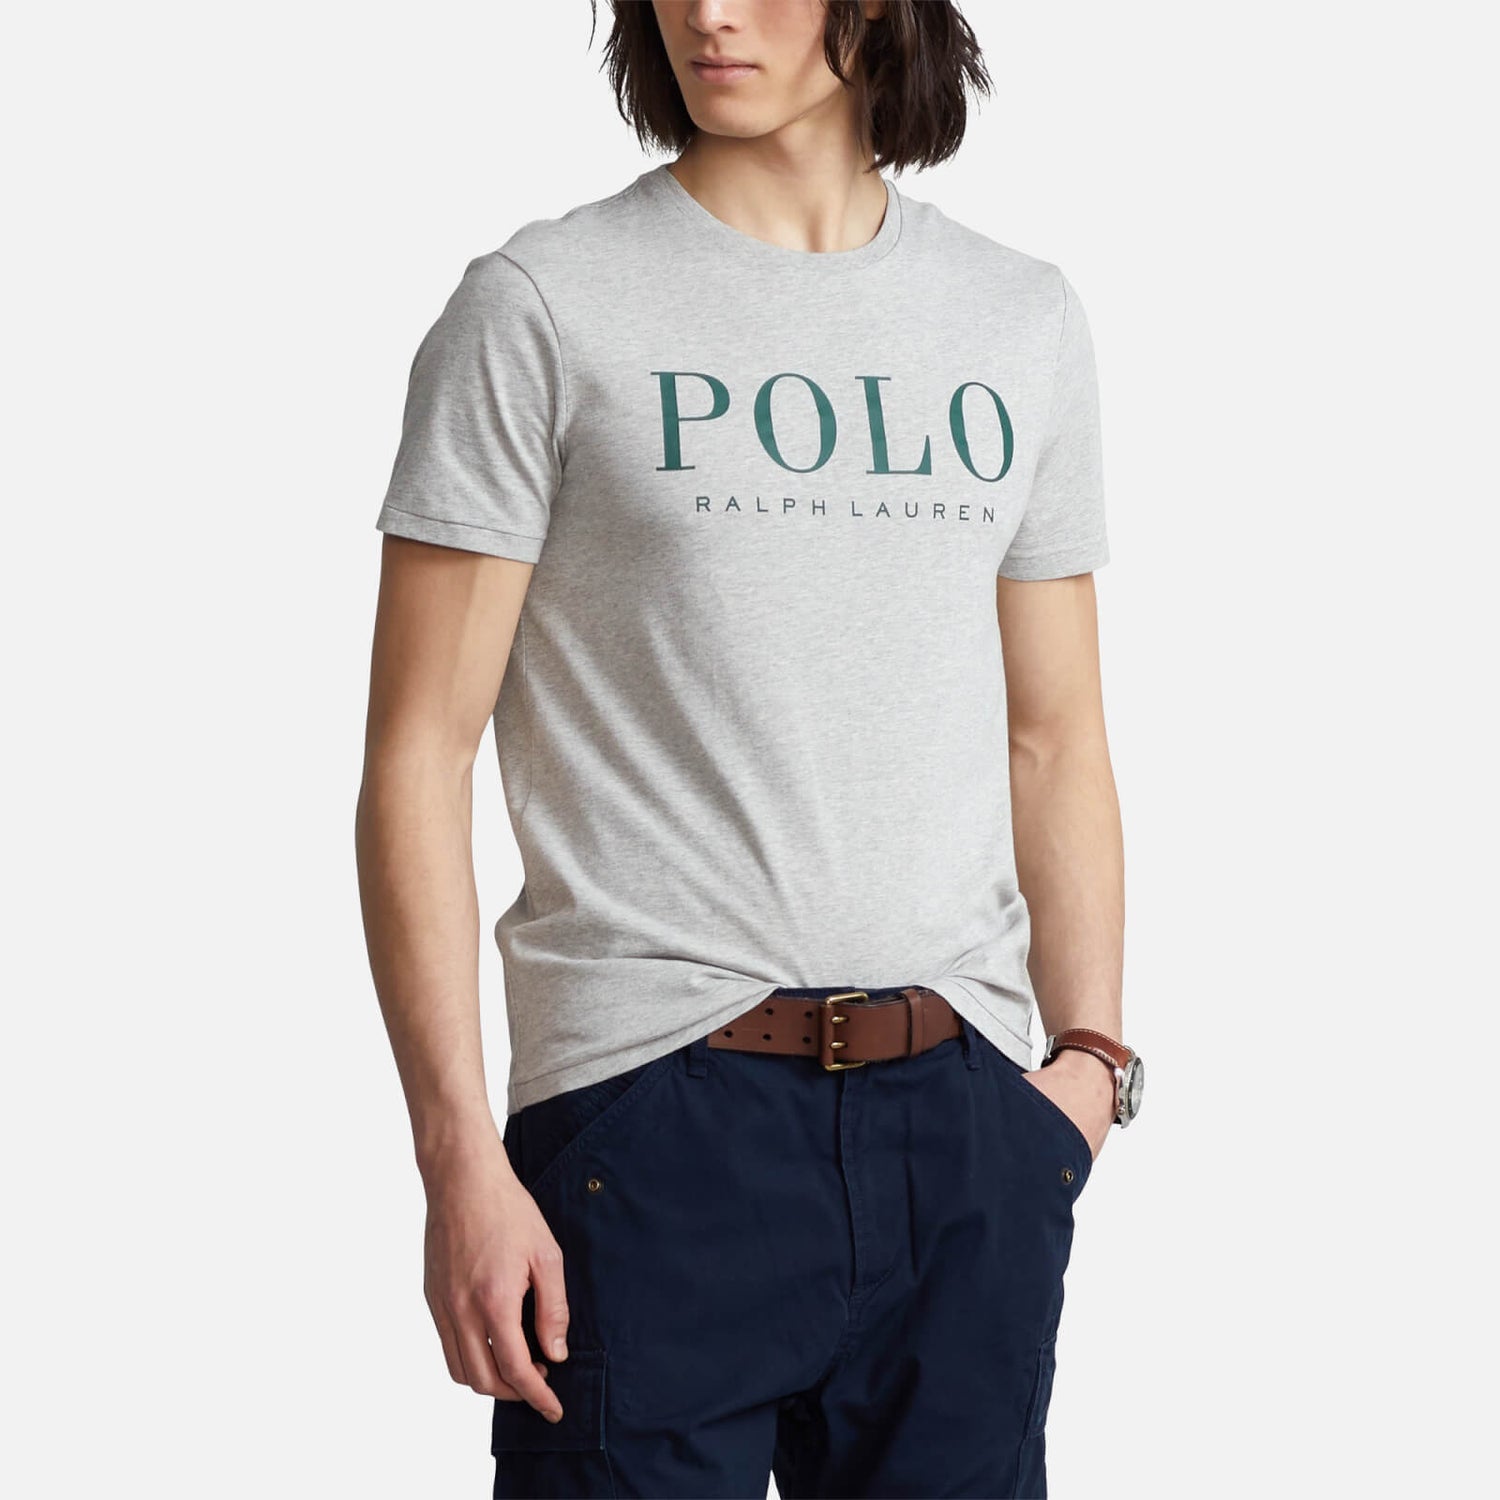 Polo Ralph Lauren Men's Script Logo T-Shirt - Andover Heather - S